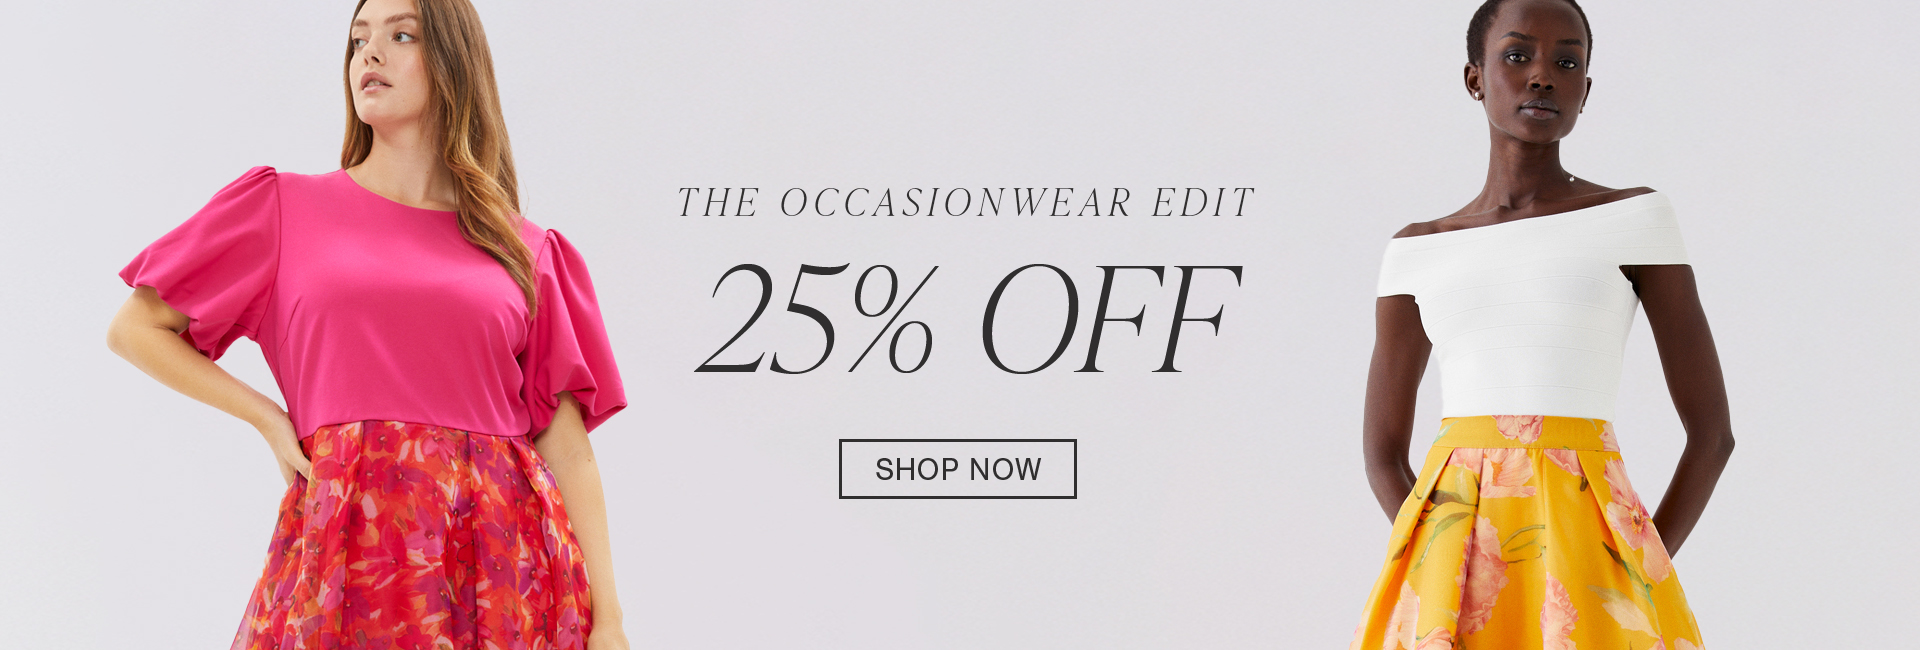 25% Off Occasionwear Edit